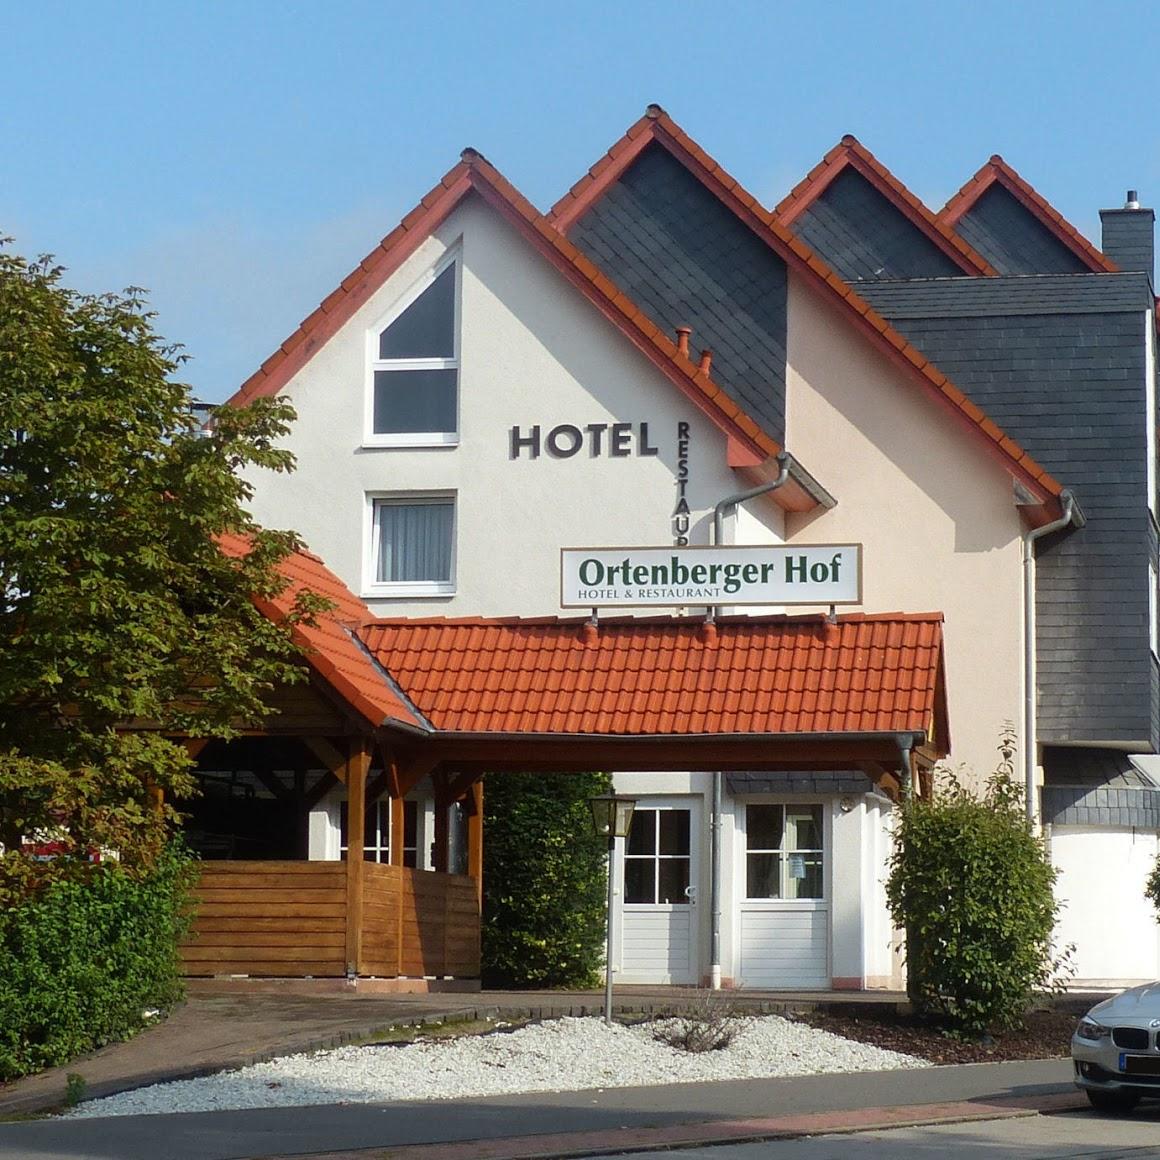 Restaurant "Hotel Restaurant er Hof" in  Ortenberg